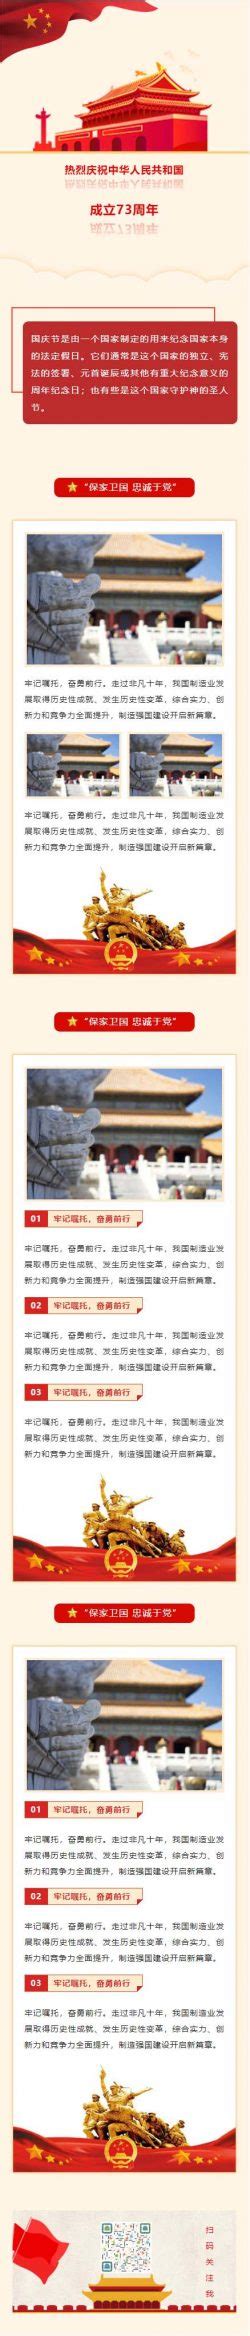 中华人民共合国成立70周年国庆节纪念日红色党政推送推文微信模板 | 微信公众号文章模板大全